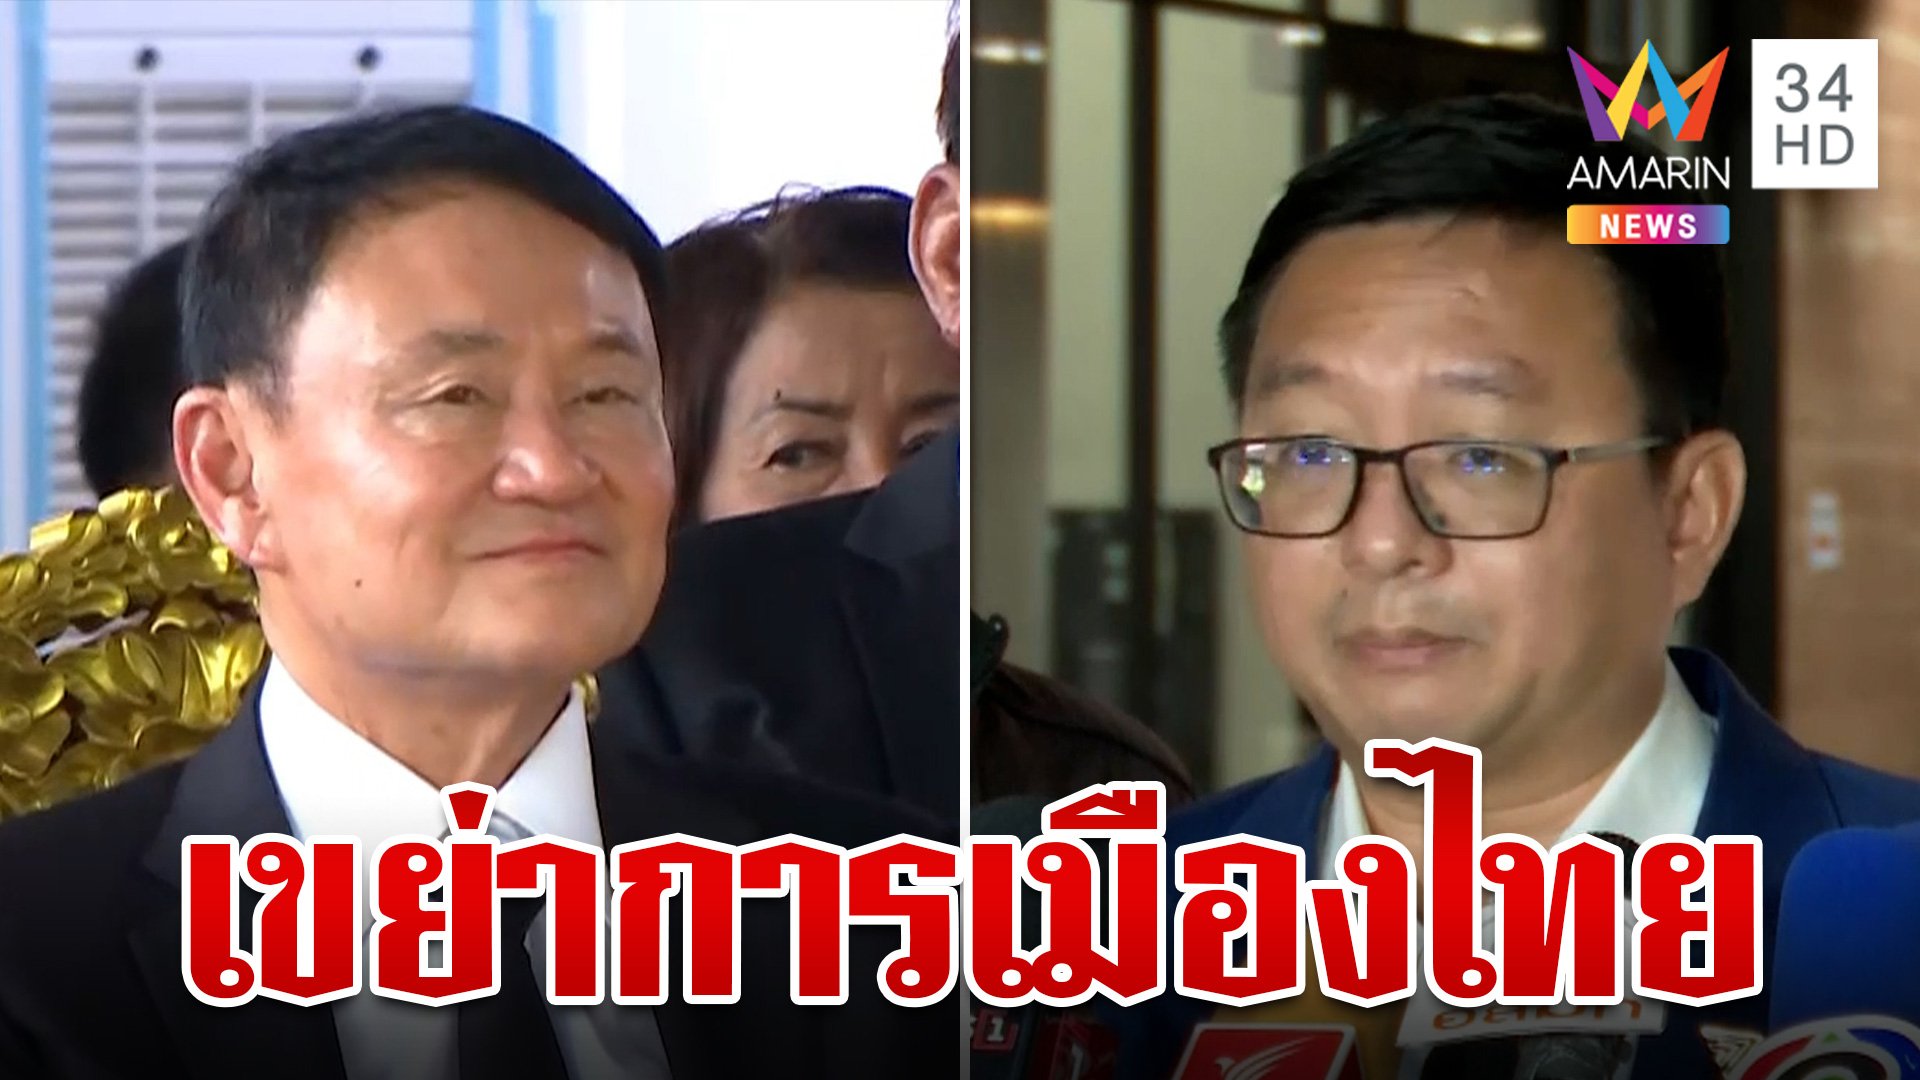 จับตา 18 มิ.ย. เขย่าการเมืองไทย จ่อเชือด 3 คดีเดือด ทักษิณ-ก้าวไกล-เศรษฐา | ทุบโต๊ะข่าว | 12 มิ.ย. 67 | AMARIN TVHD34